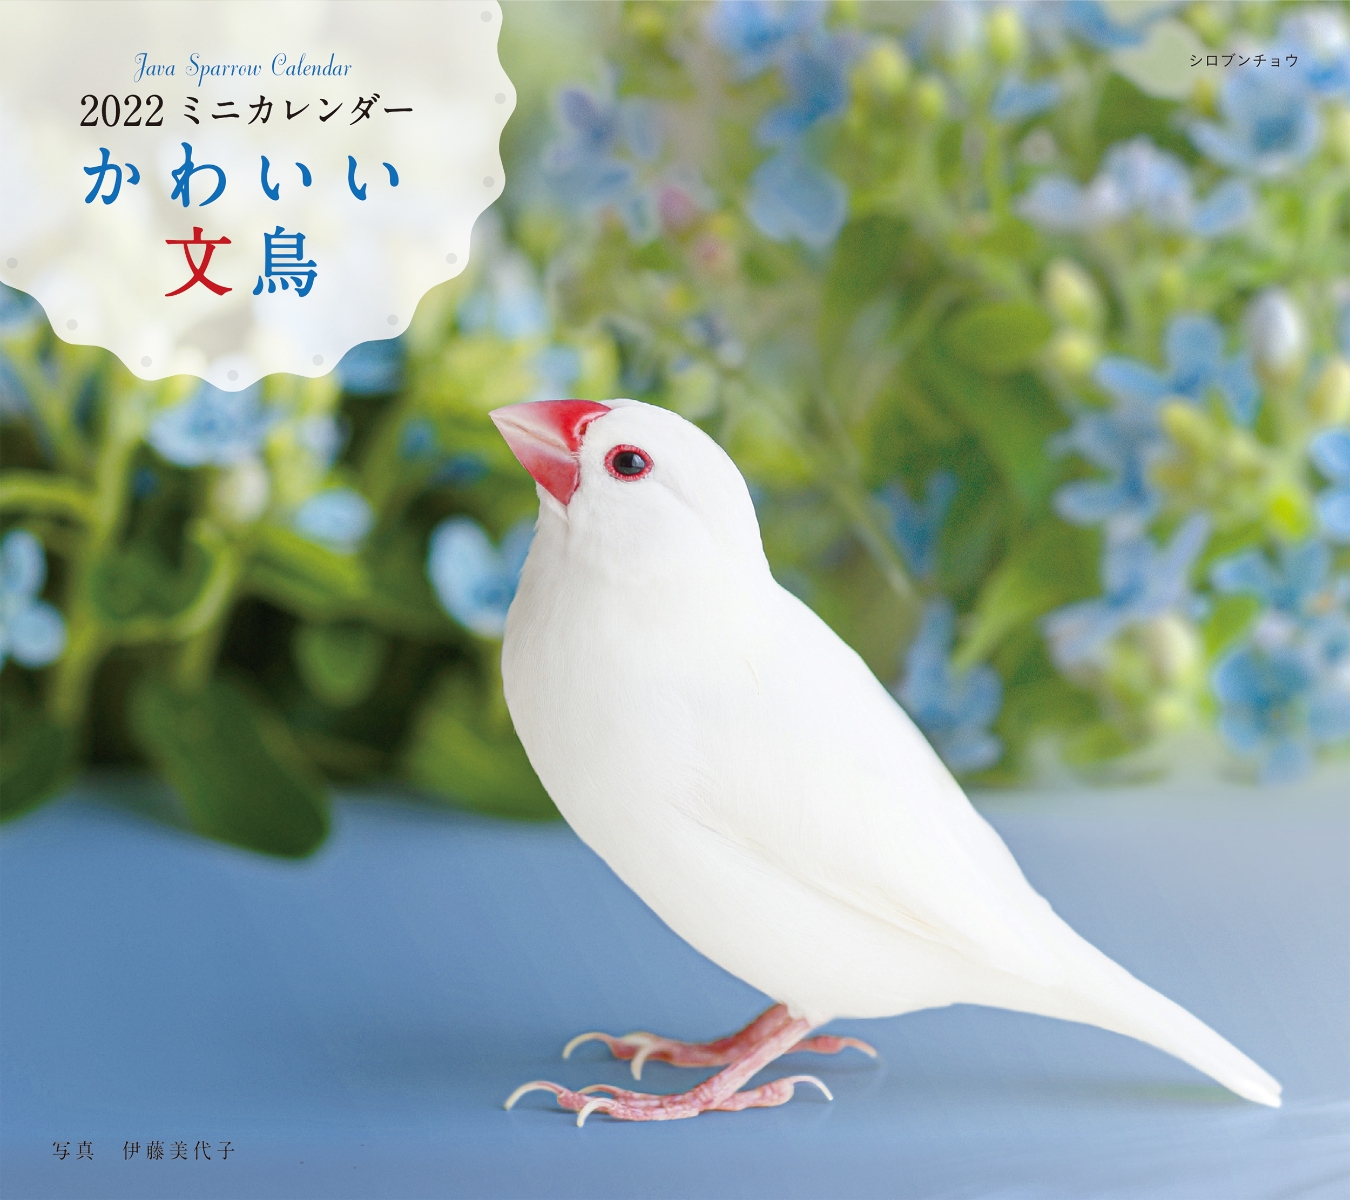 楽天ブックス 22年 カレンダー かわいい文鳥 100名様に1 000円分の図書カードをプレゼント 伊藤 美代子 本